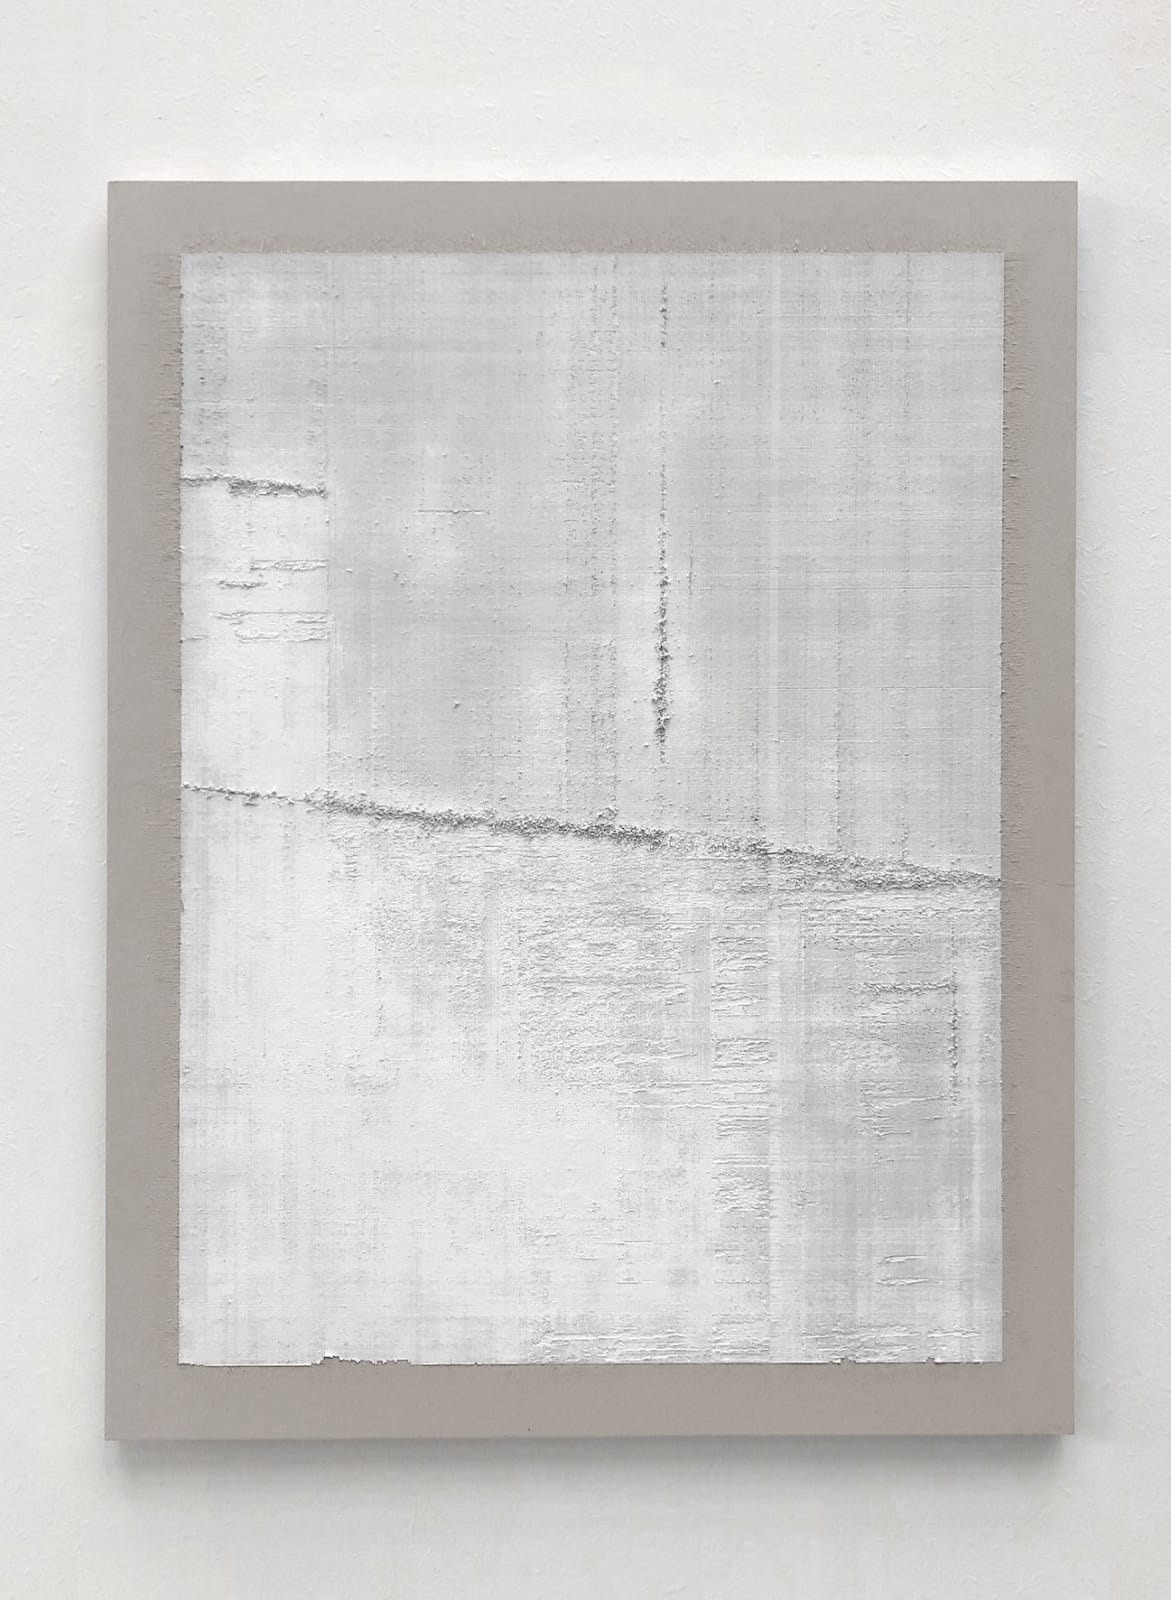 Éric Baudart, Papier millimétré extra blanc, 2019